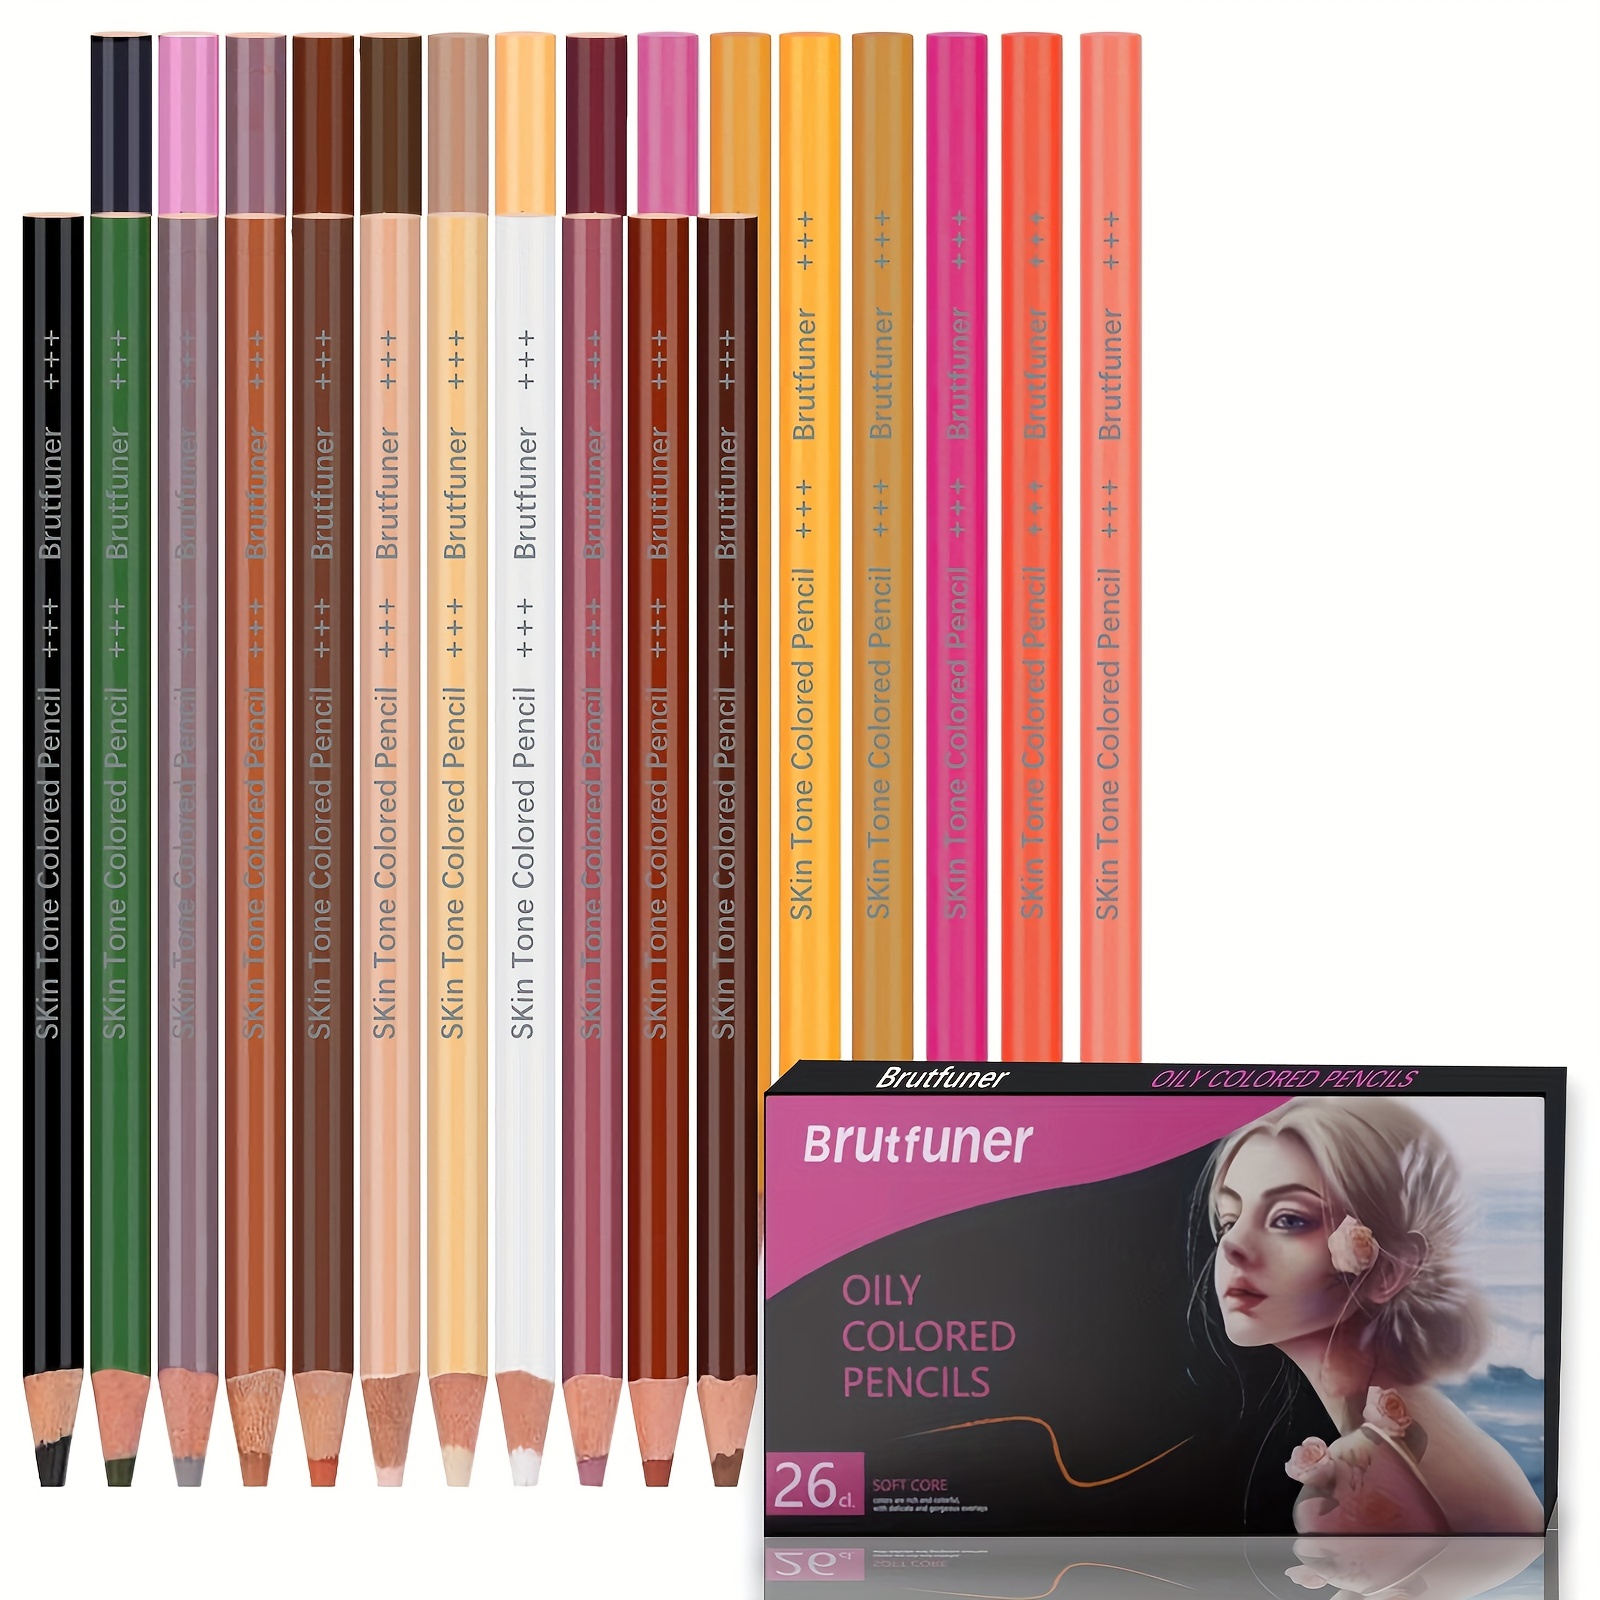 Kalour Pro Pastel Chalk Colored Pencils /72 Colors Color - Temu